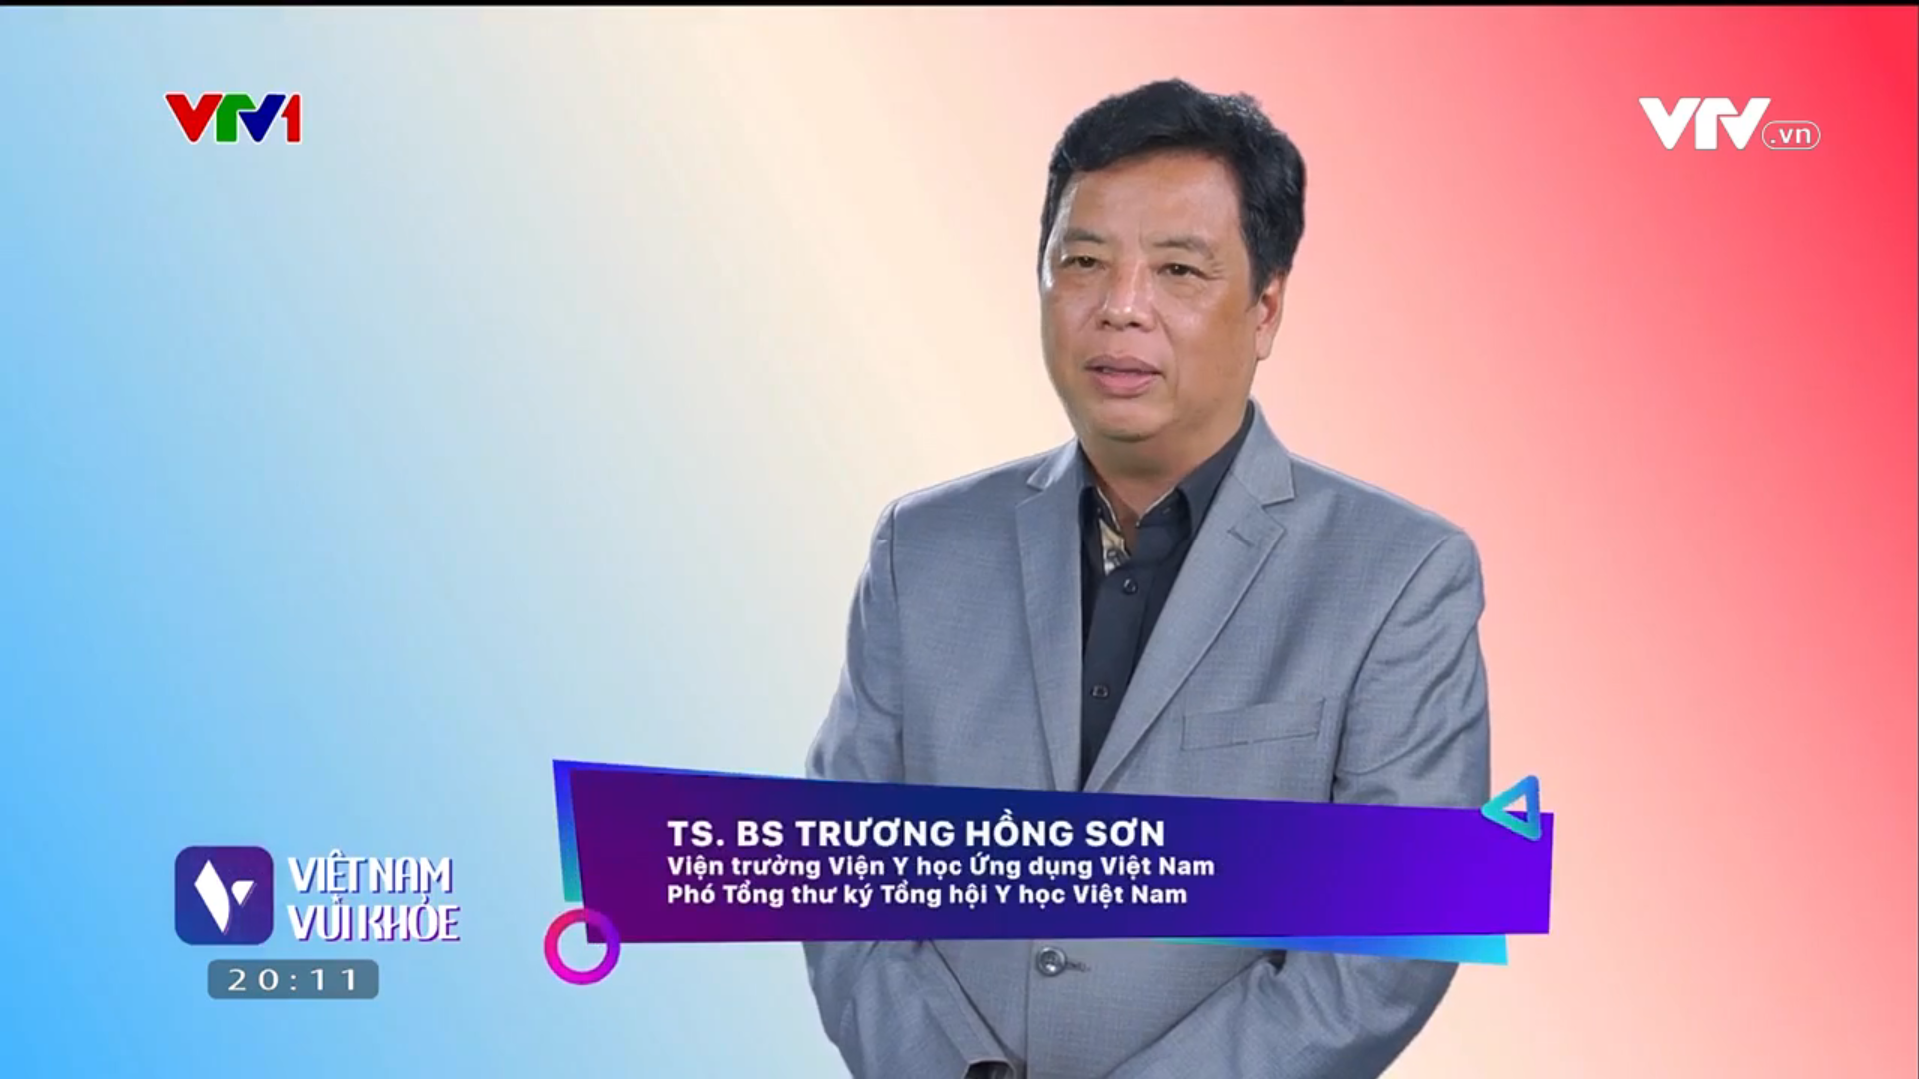 TS. BS Trương Hồng Sơn.